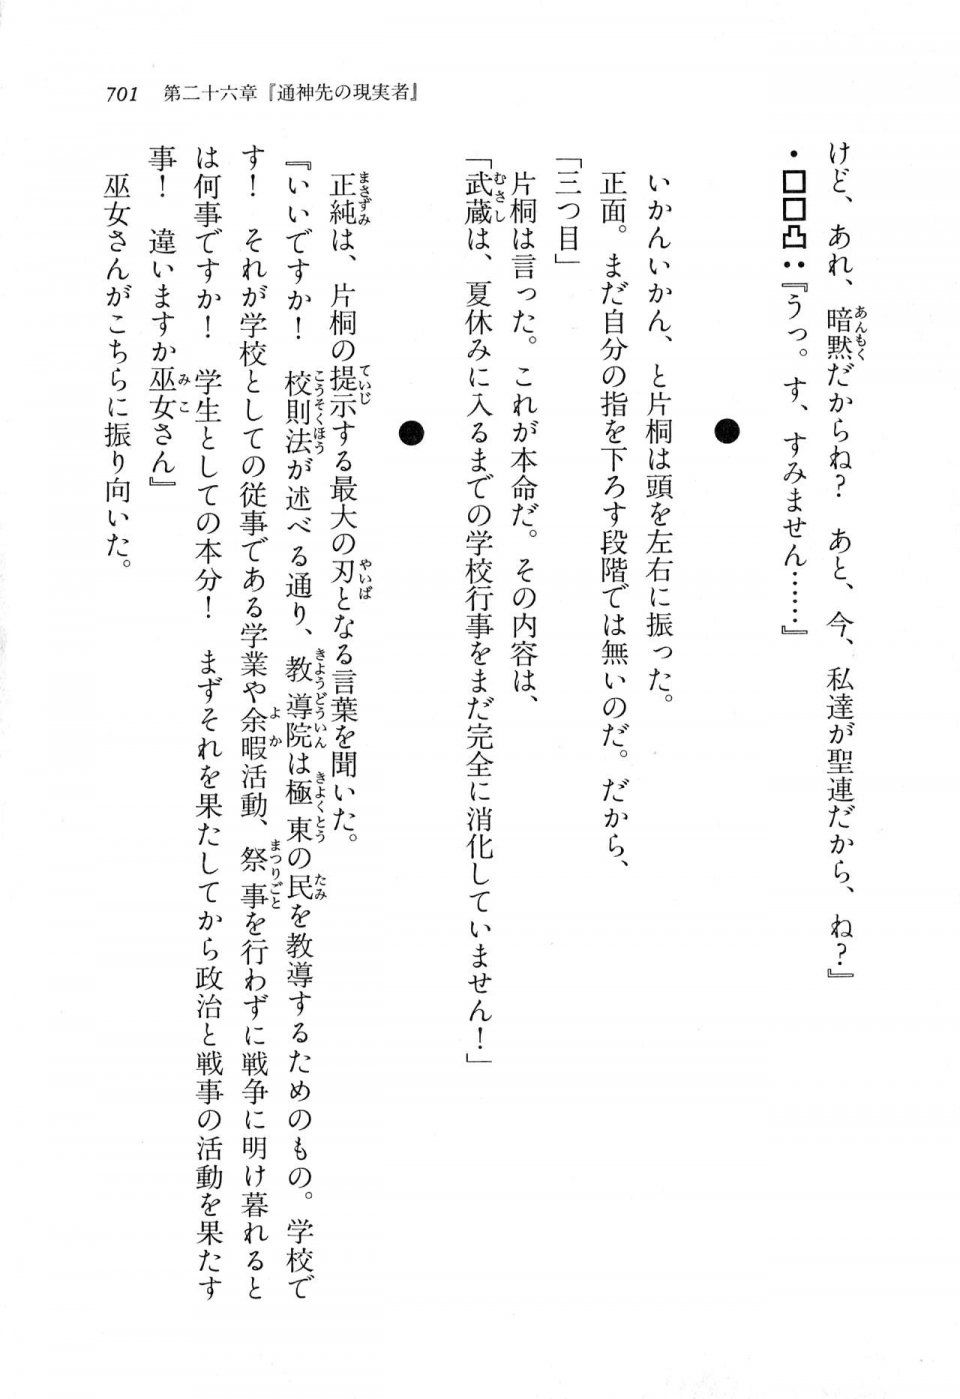 Kyoukai Senjou no Horizon LN Vol 11(5A) - Photo #701